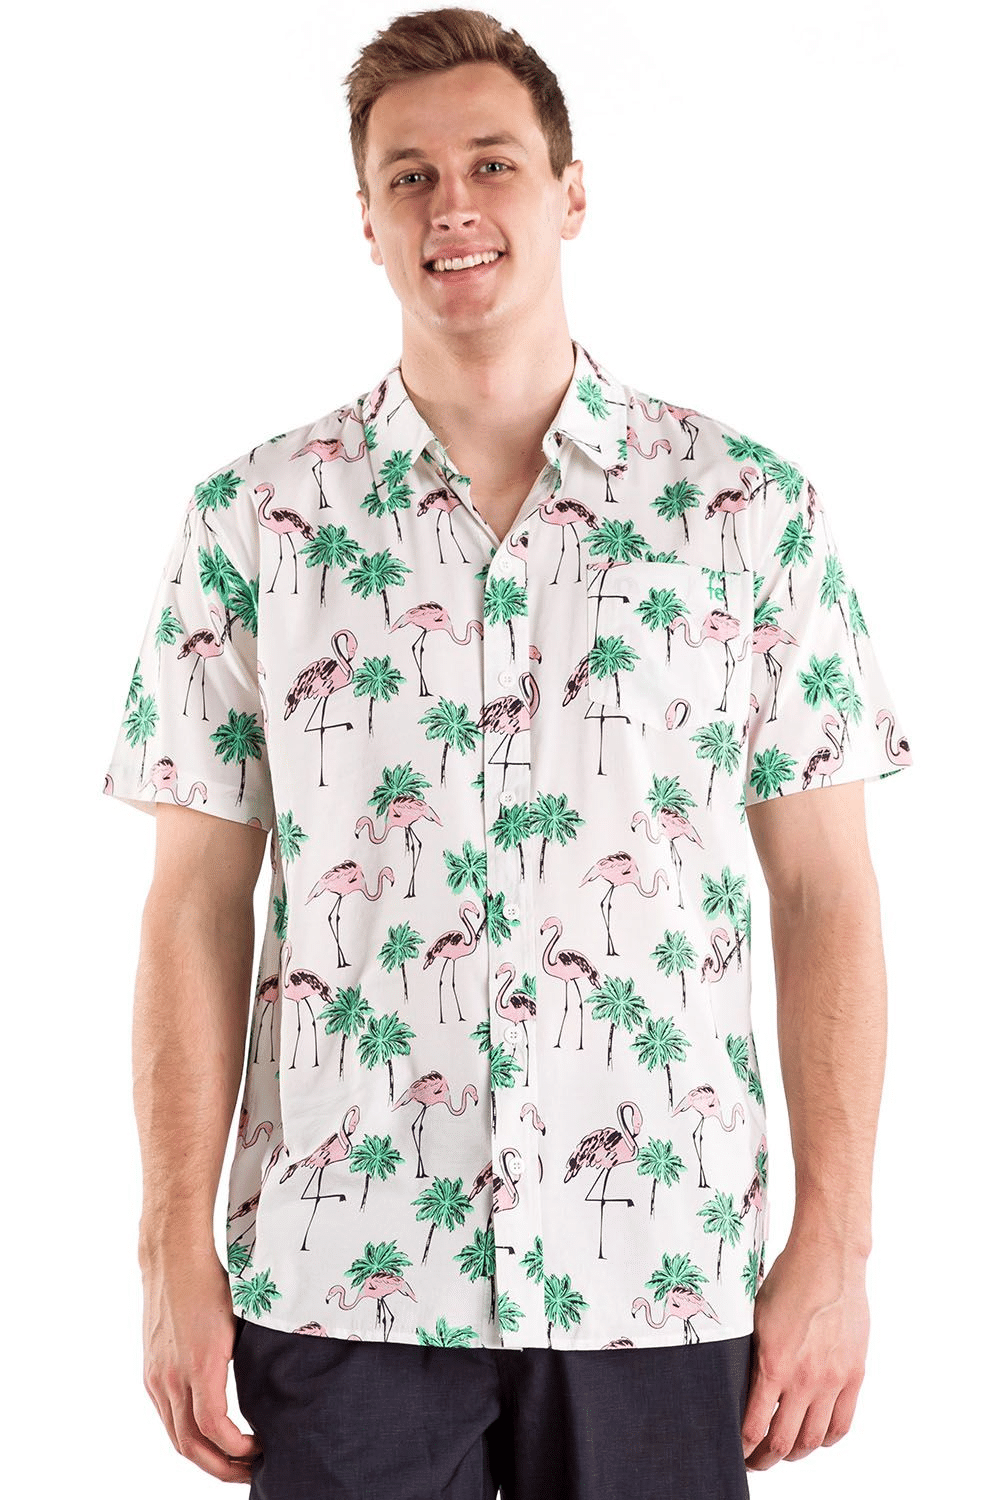 Men's Single & Ready to Flamingle Hawaiian Shirt